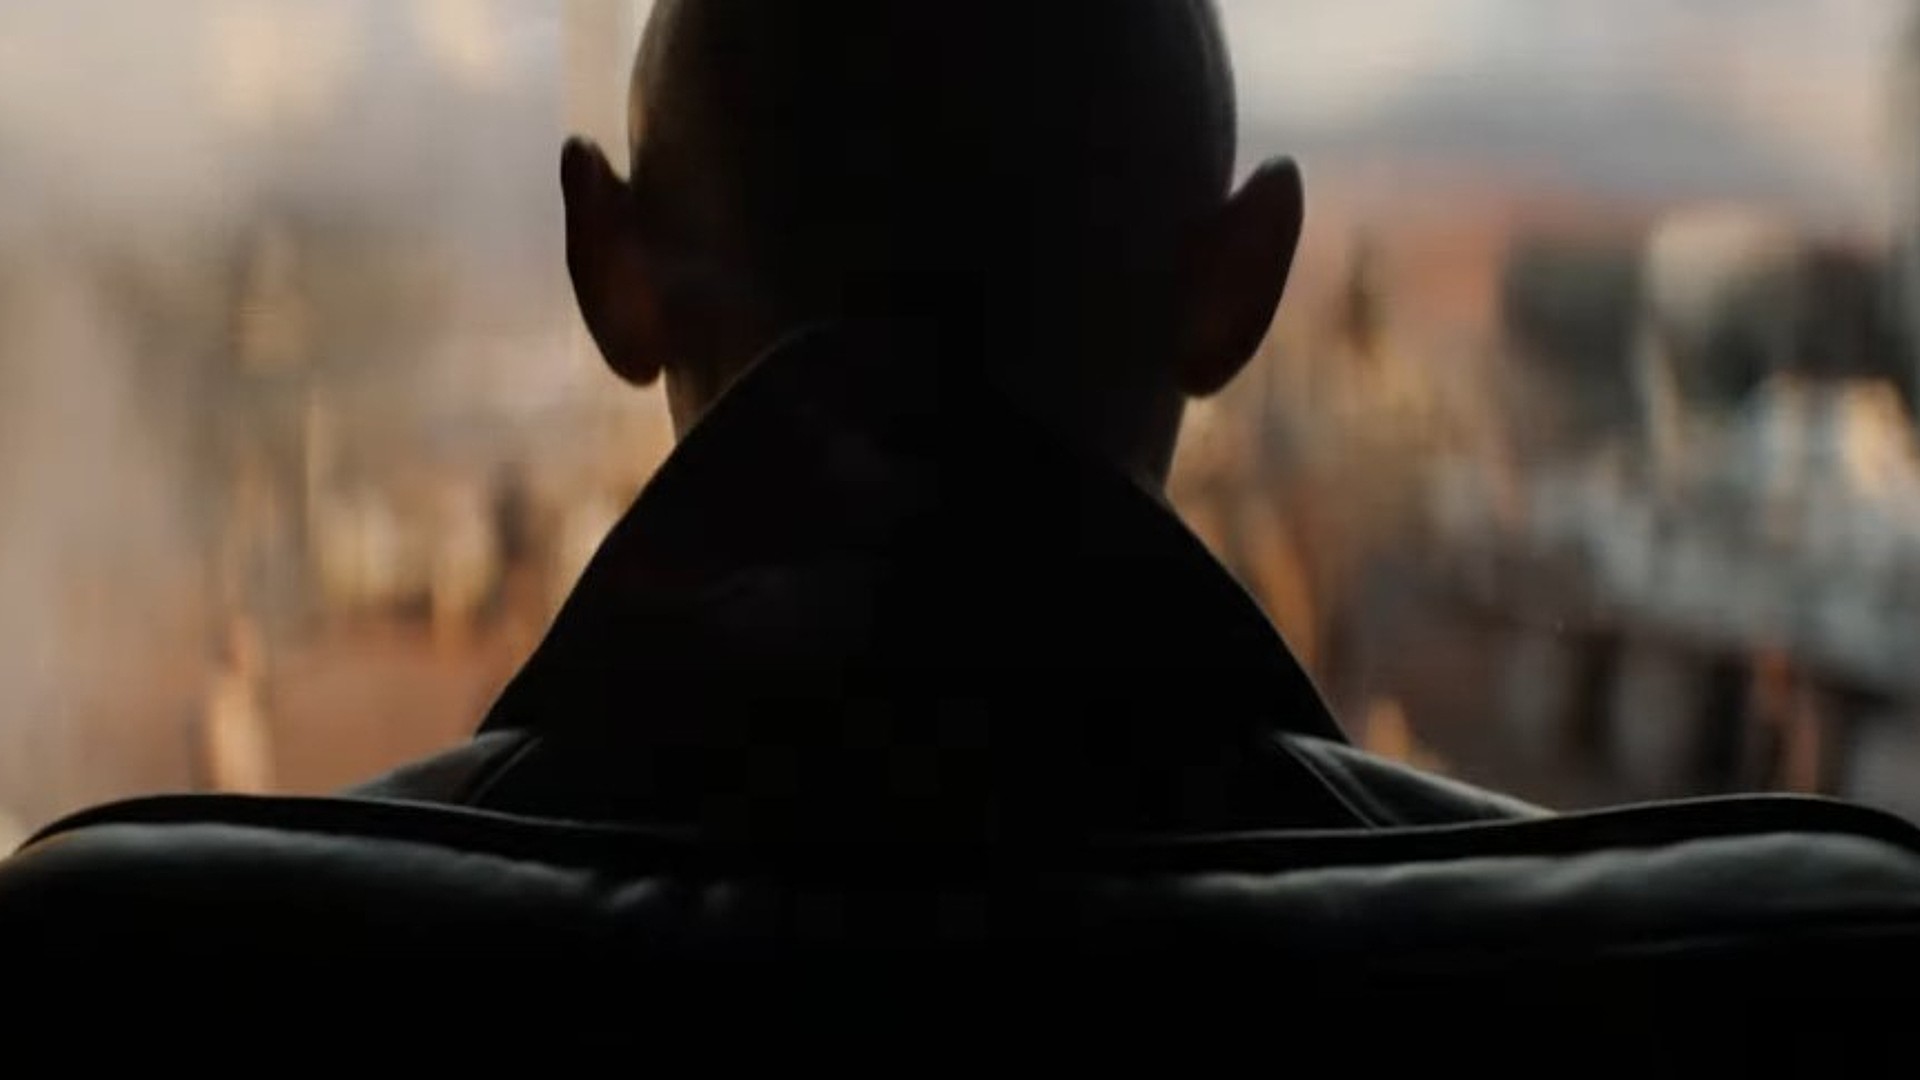 La bande-annonce de Deadpool 3 semble taquiner l'apparition de la méchante X-Men, Cassandra Nova